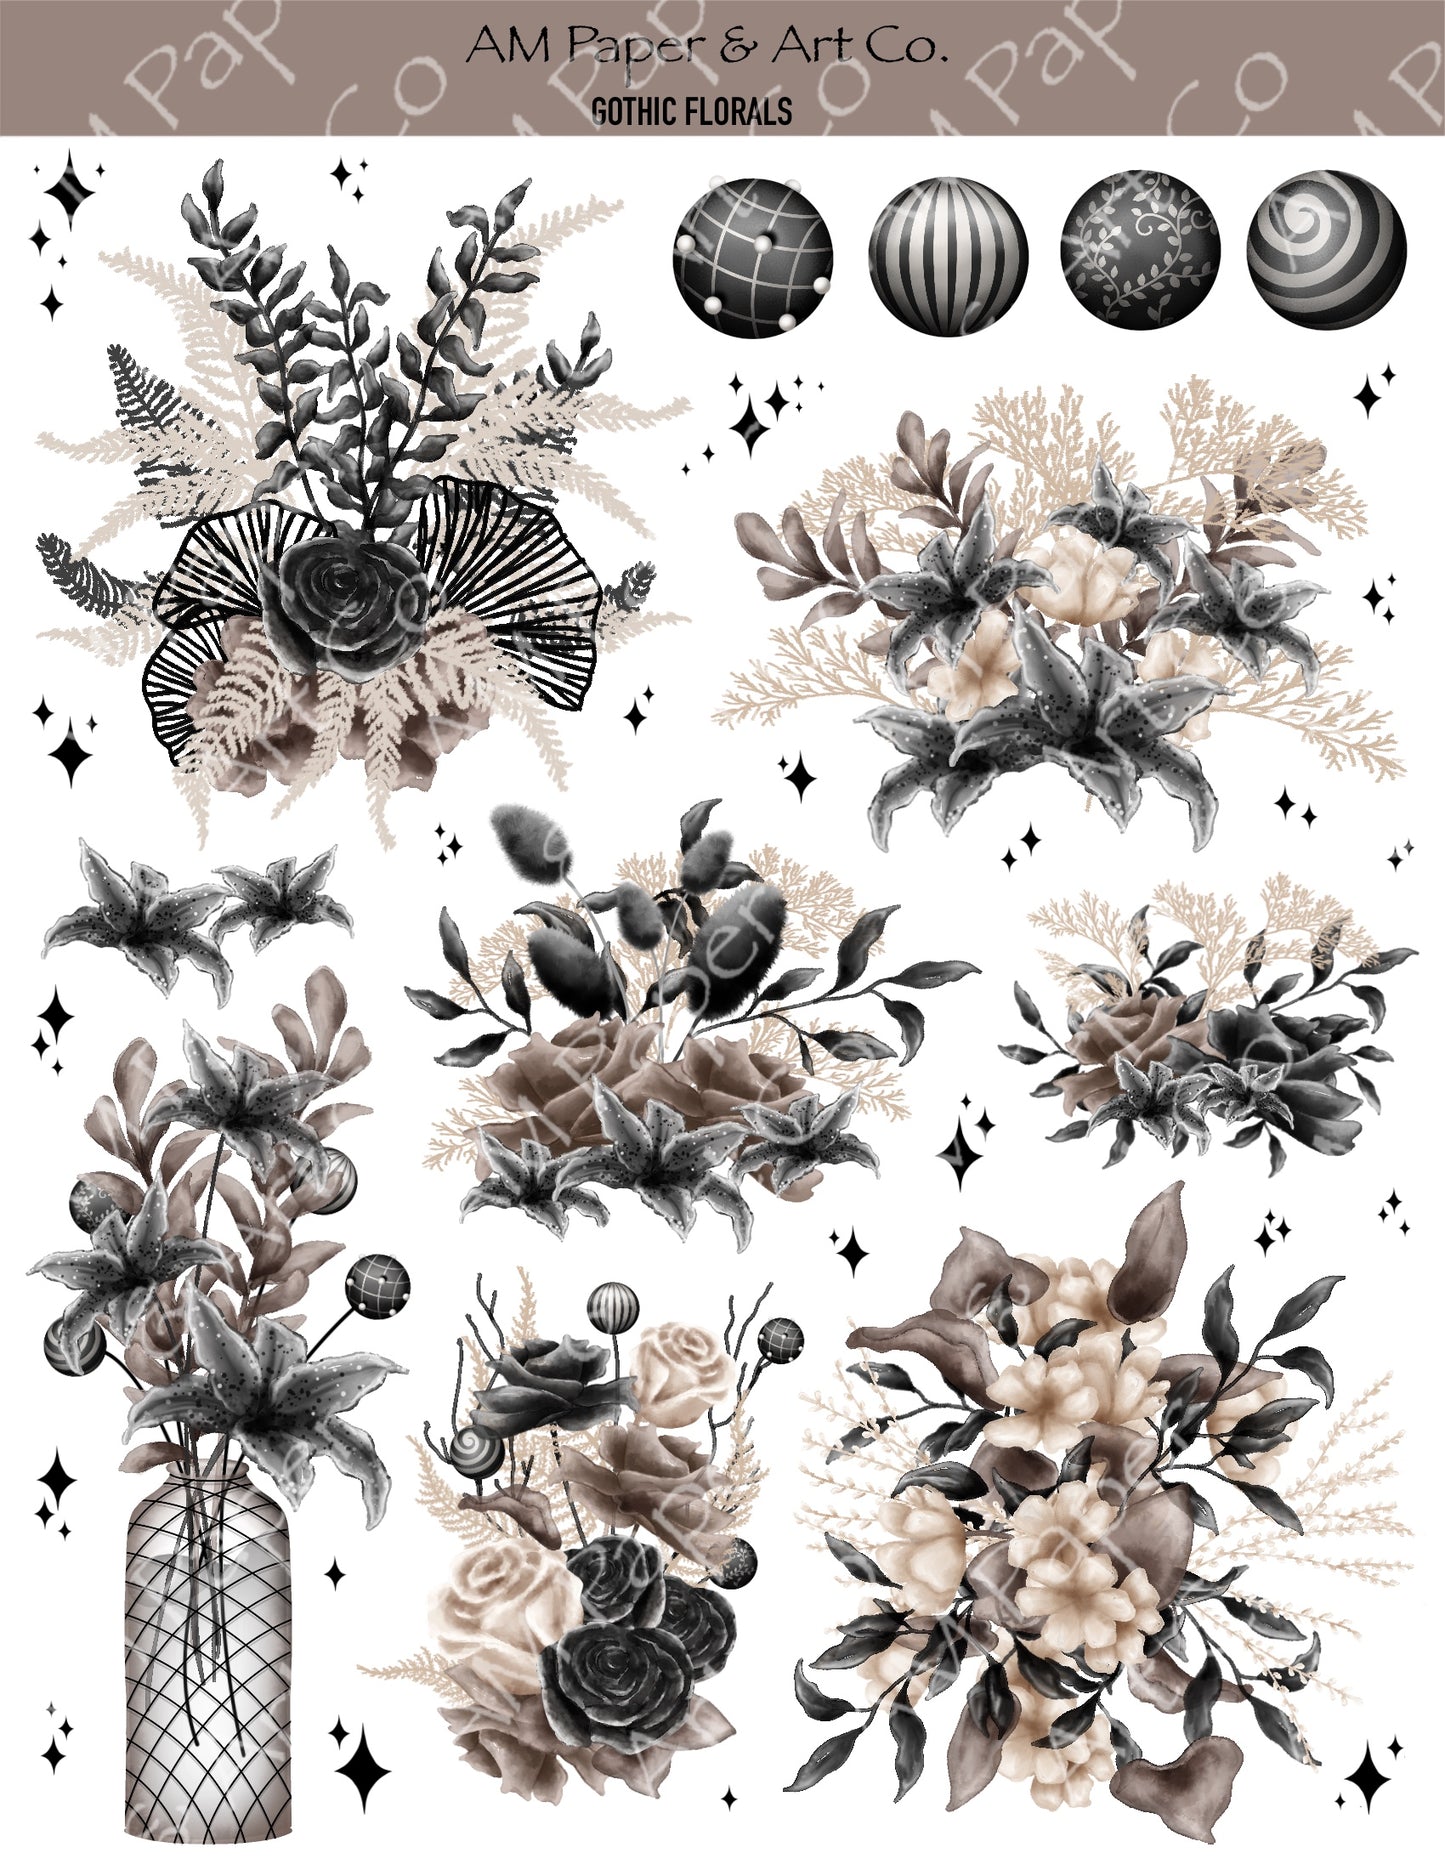 Gothic Florals Stickers